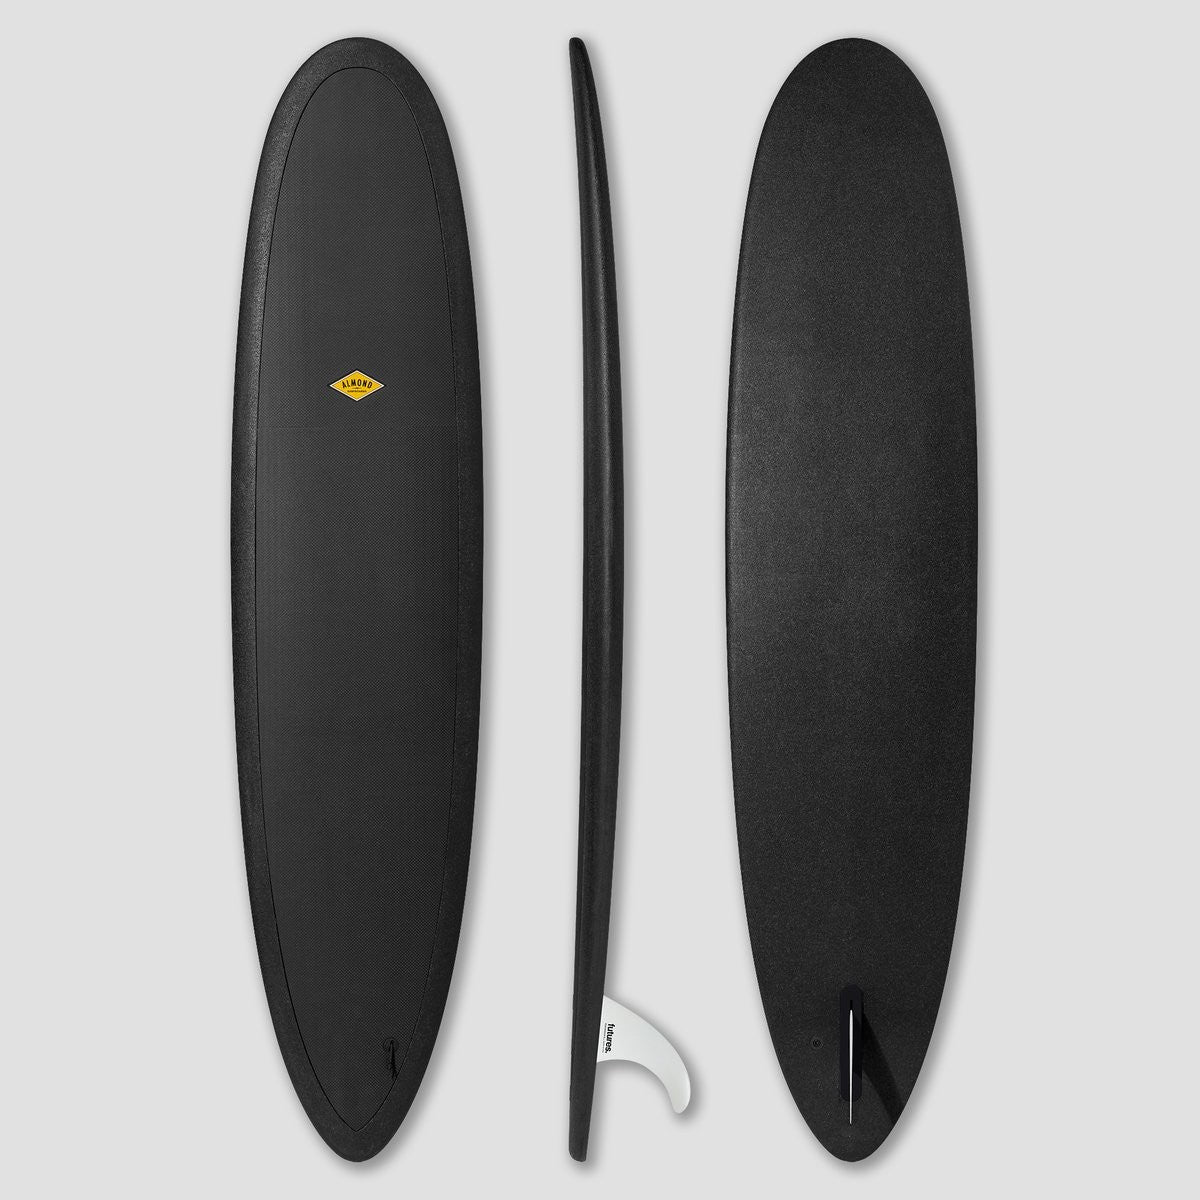 ALMOND Tablas de surf - R-Series Joy 8' - Negro